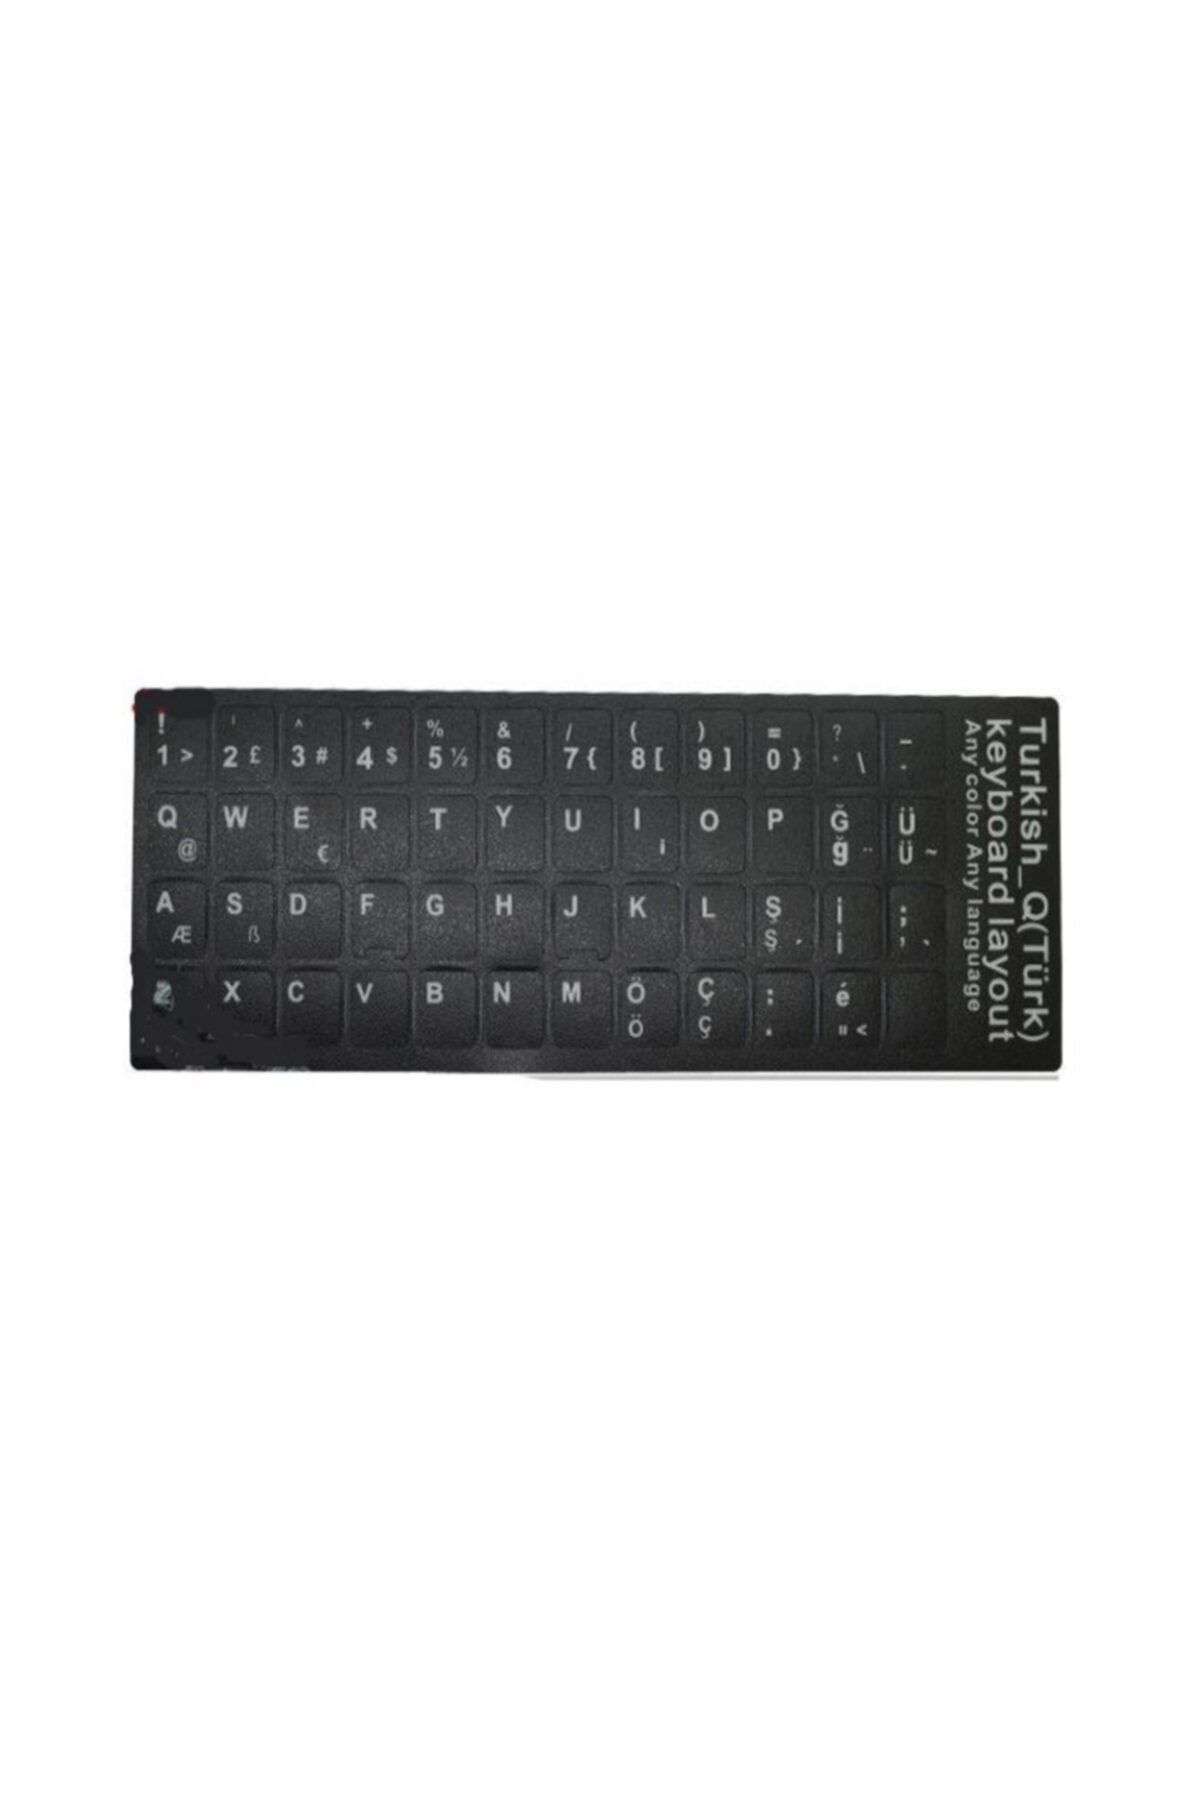 FANO Türkçe Klavye Sticker Siyah Renk Notebook Ve Pc Uyumlu